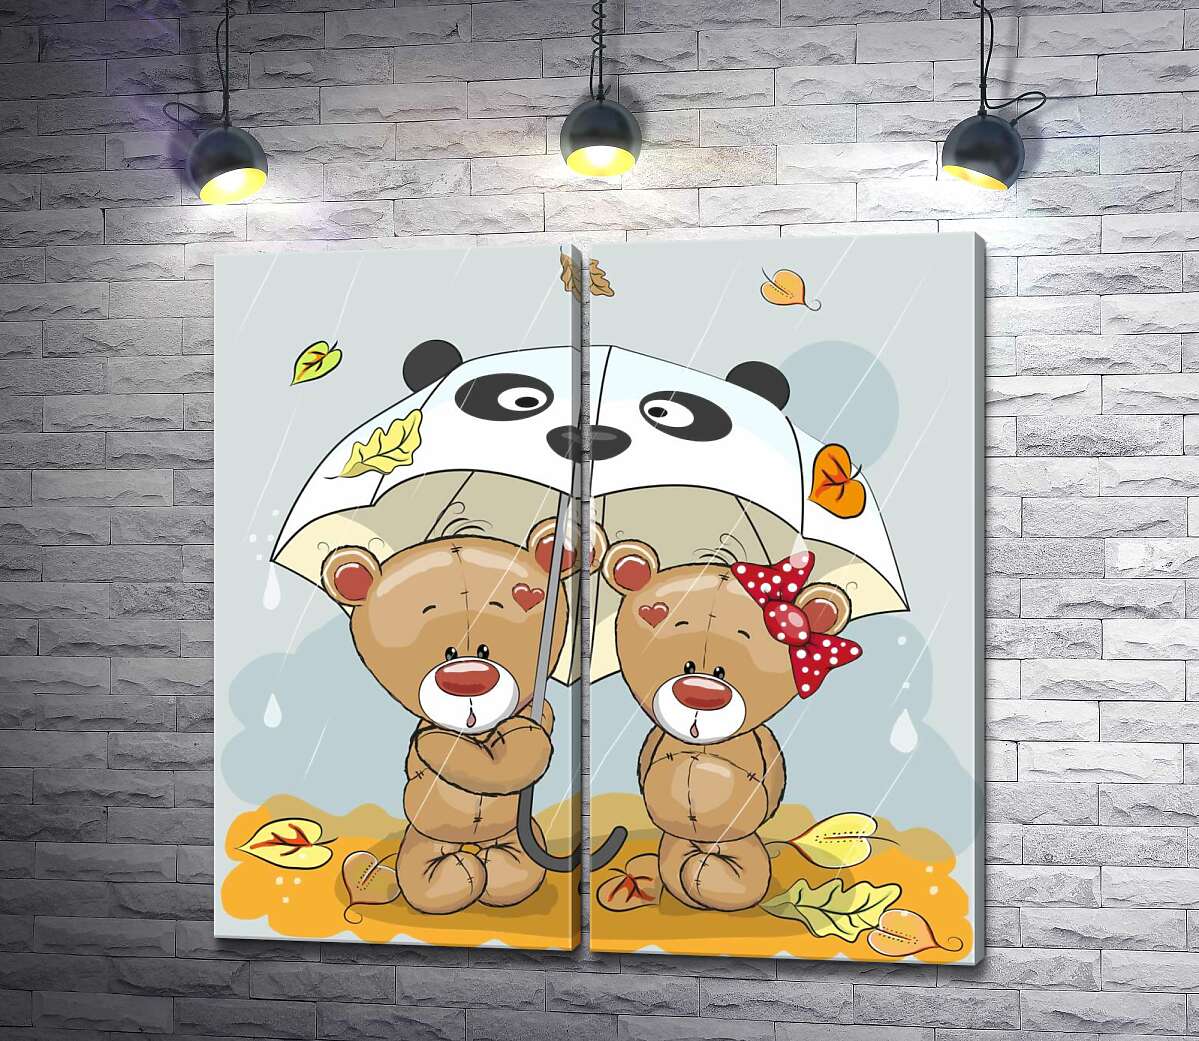 модульная картина Два мишки спасаются от осеннего дождя под зонтиком